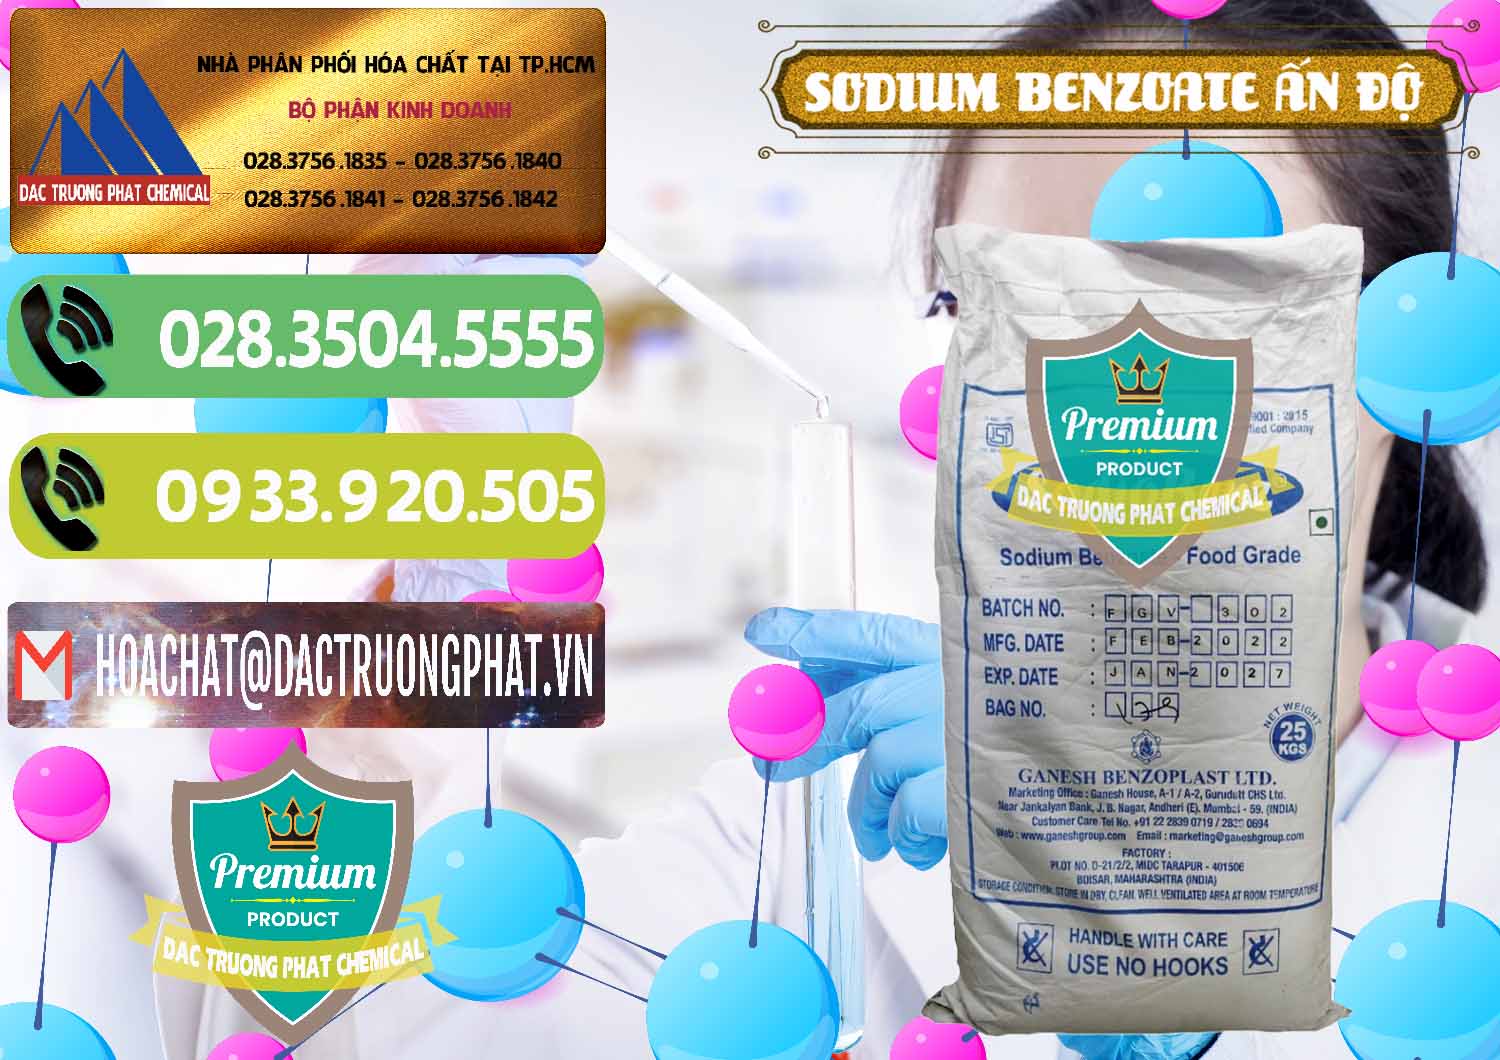 Cty chuyên bán ( cung cấp ) Sodium Benzoate - Mốc Bột Ấn Độ India - 0361 - Nhà cung cấp _ phân phối hóa chất tại TP.HCM - hoachatmientay.vn